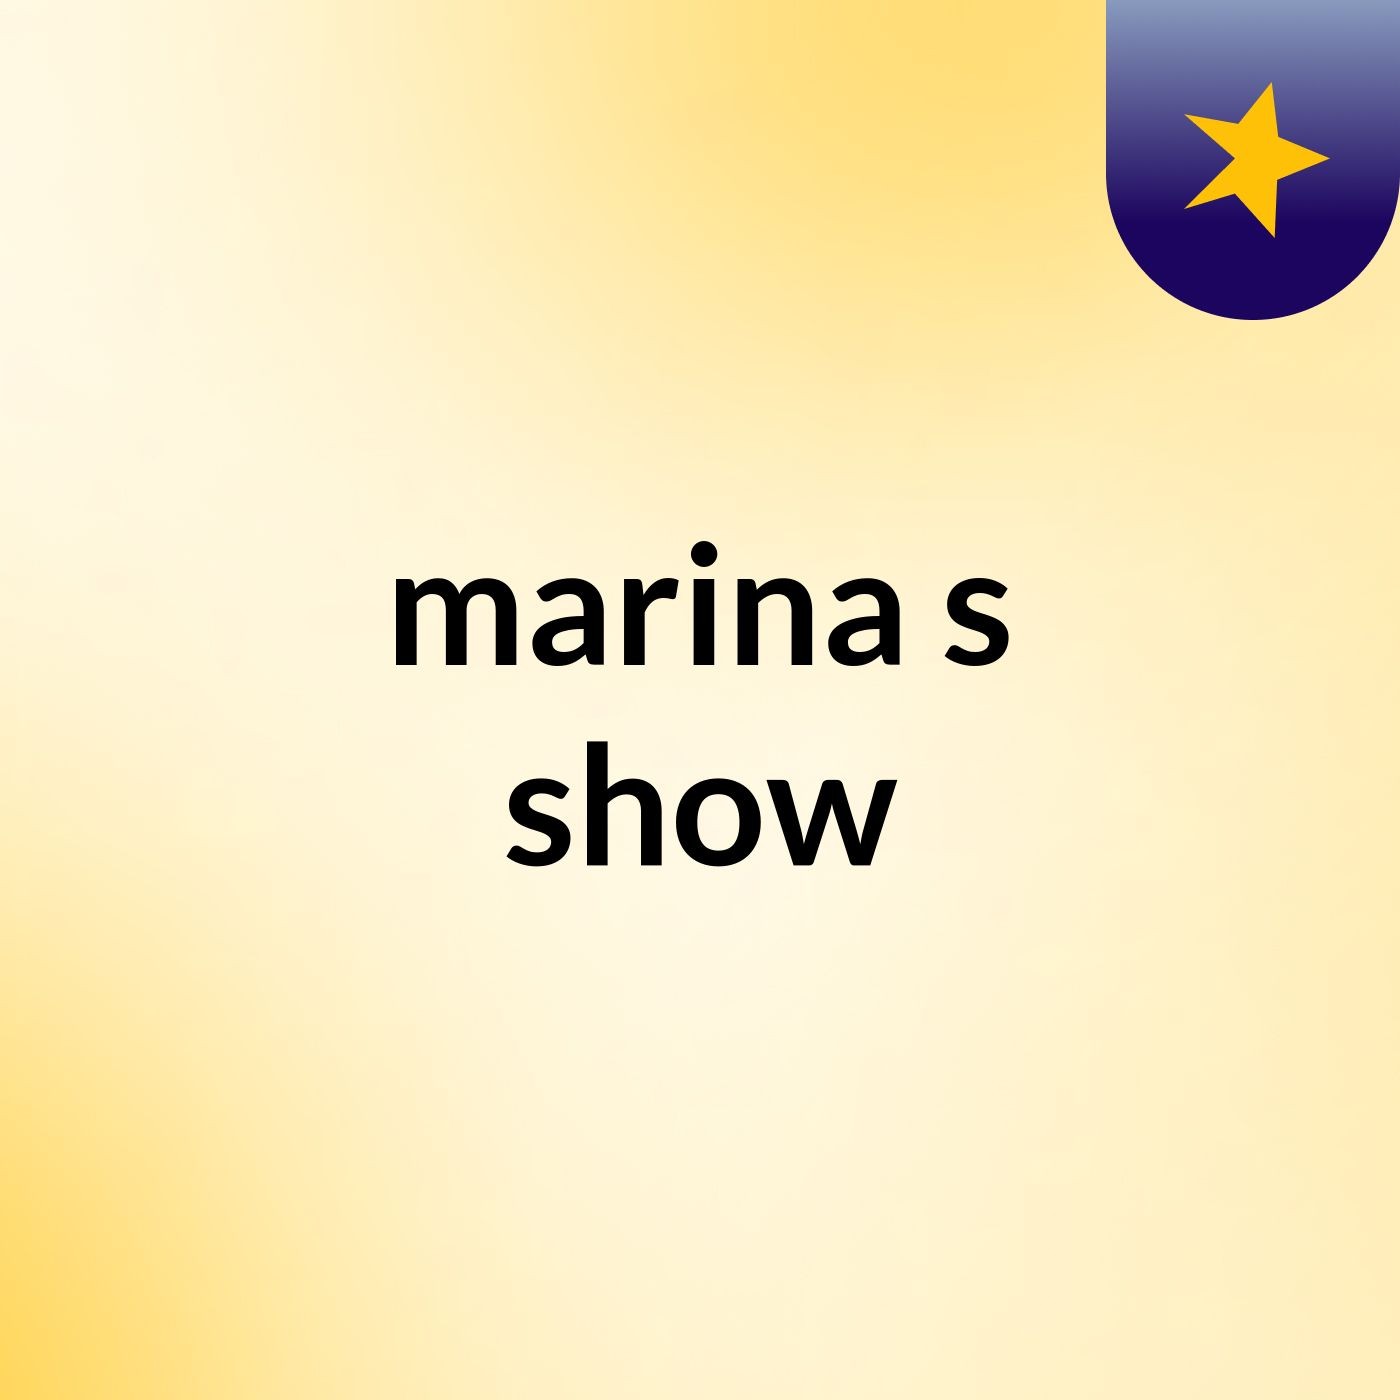 marina's show